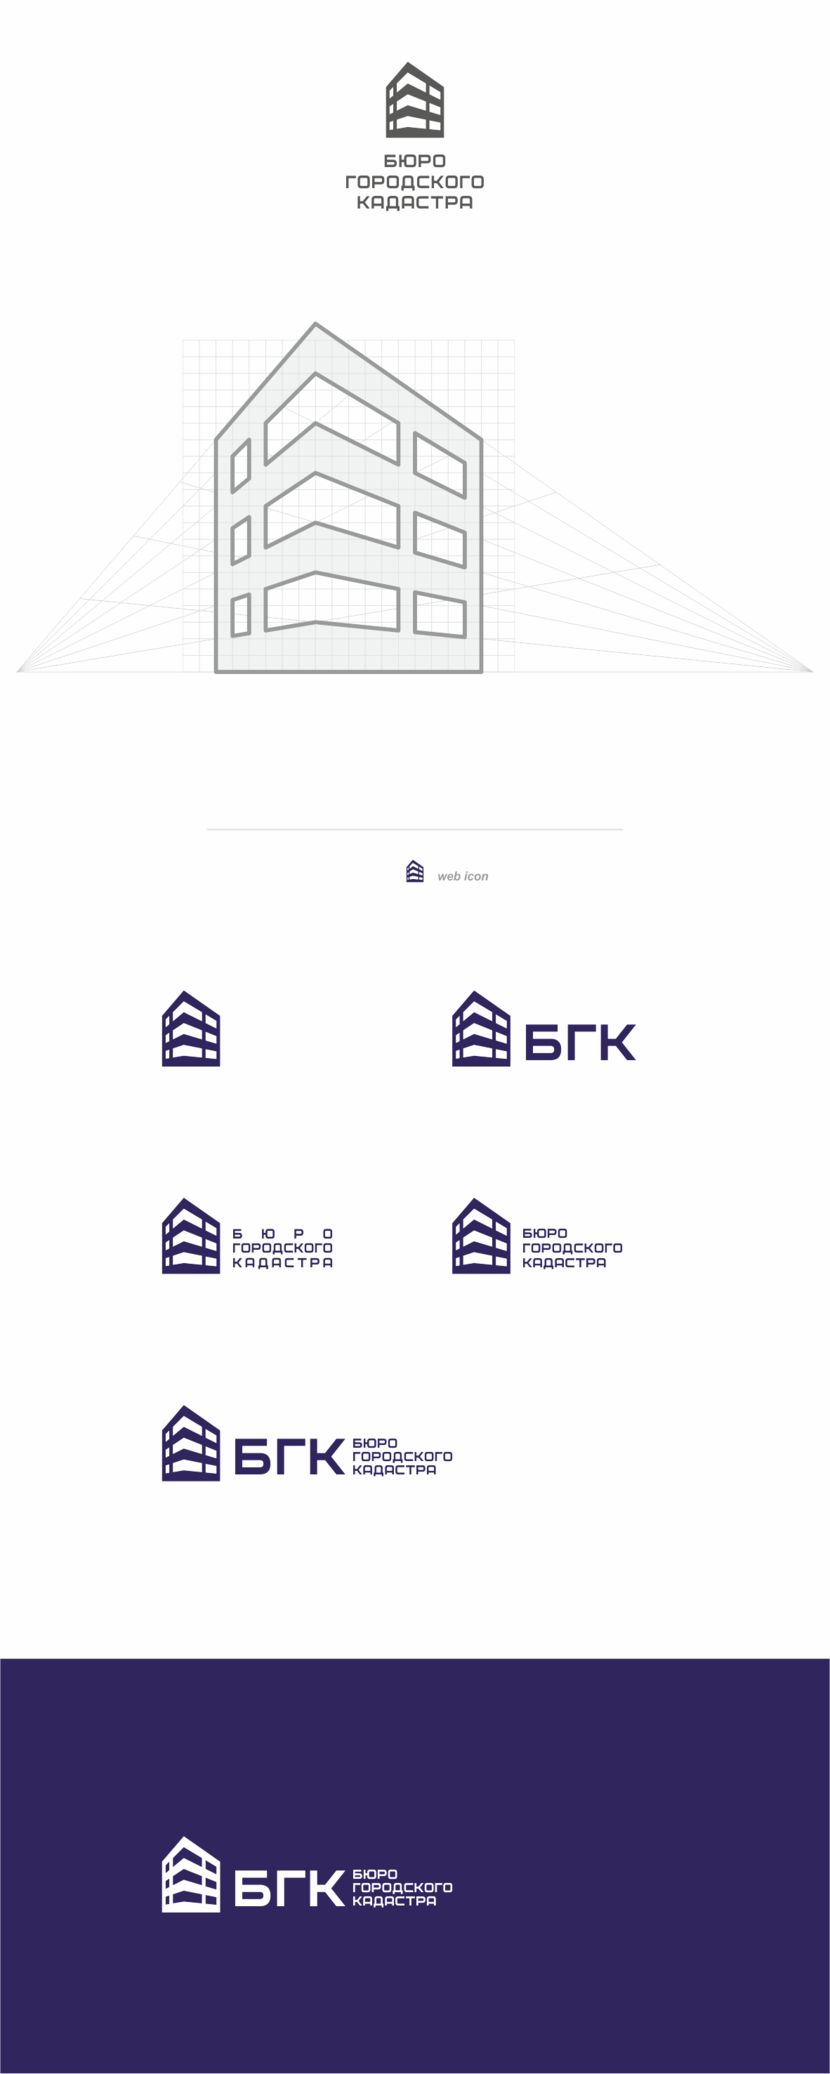 + С удовольствием))) - Разработка логотипа компании Бюро городского кадастра